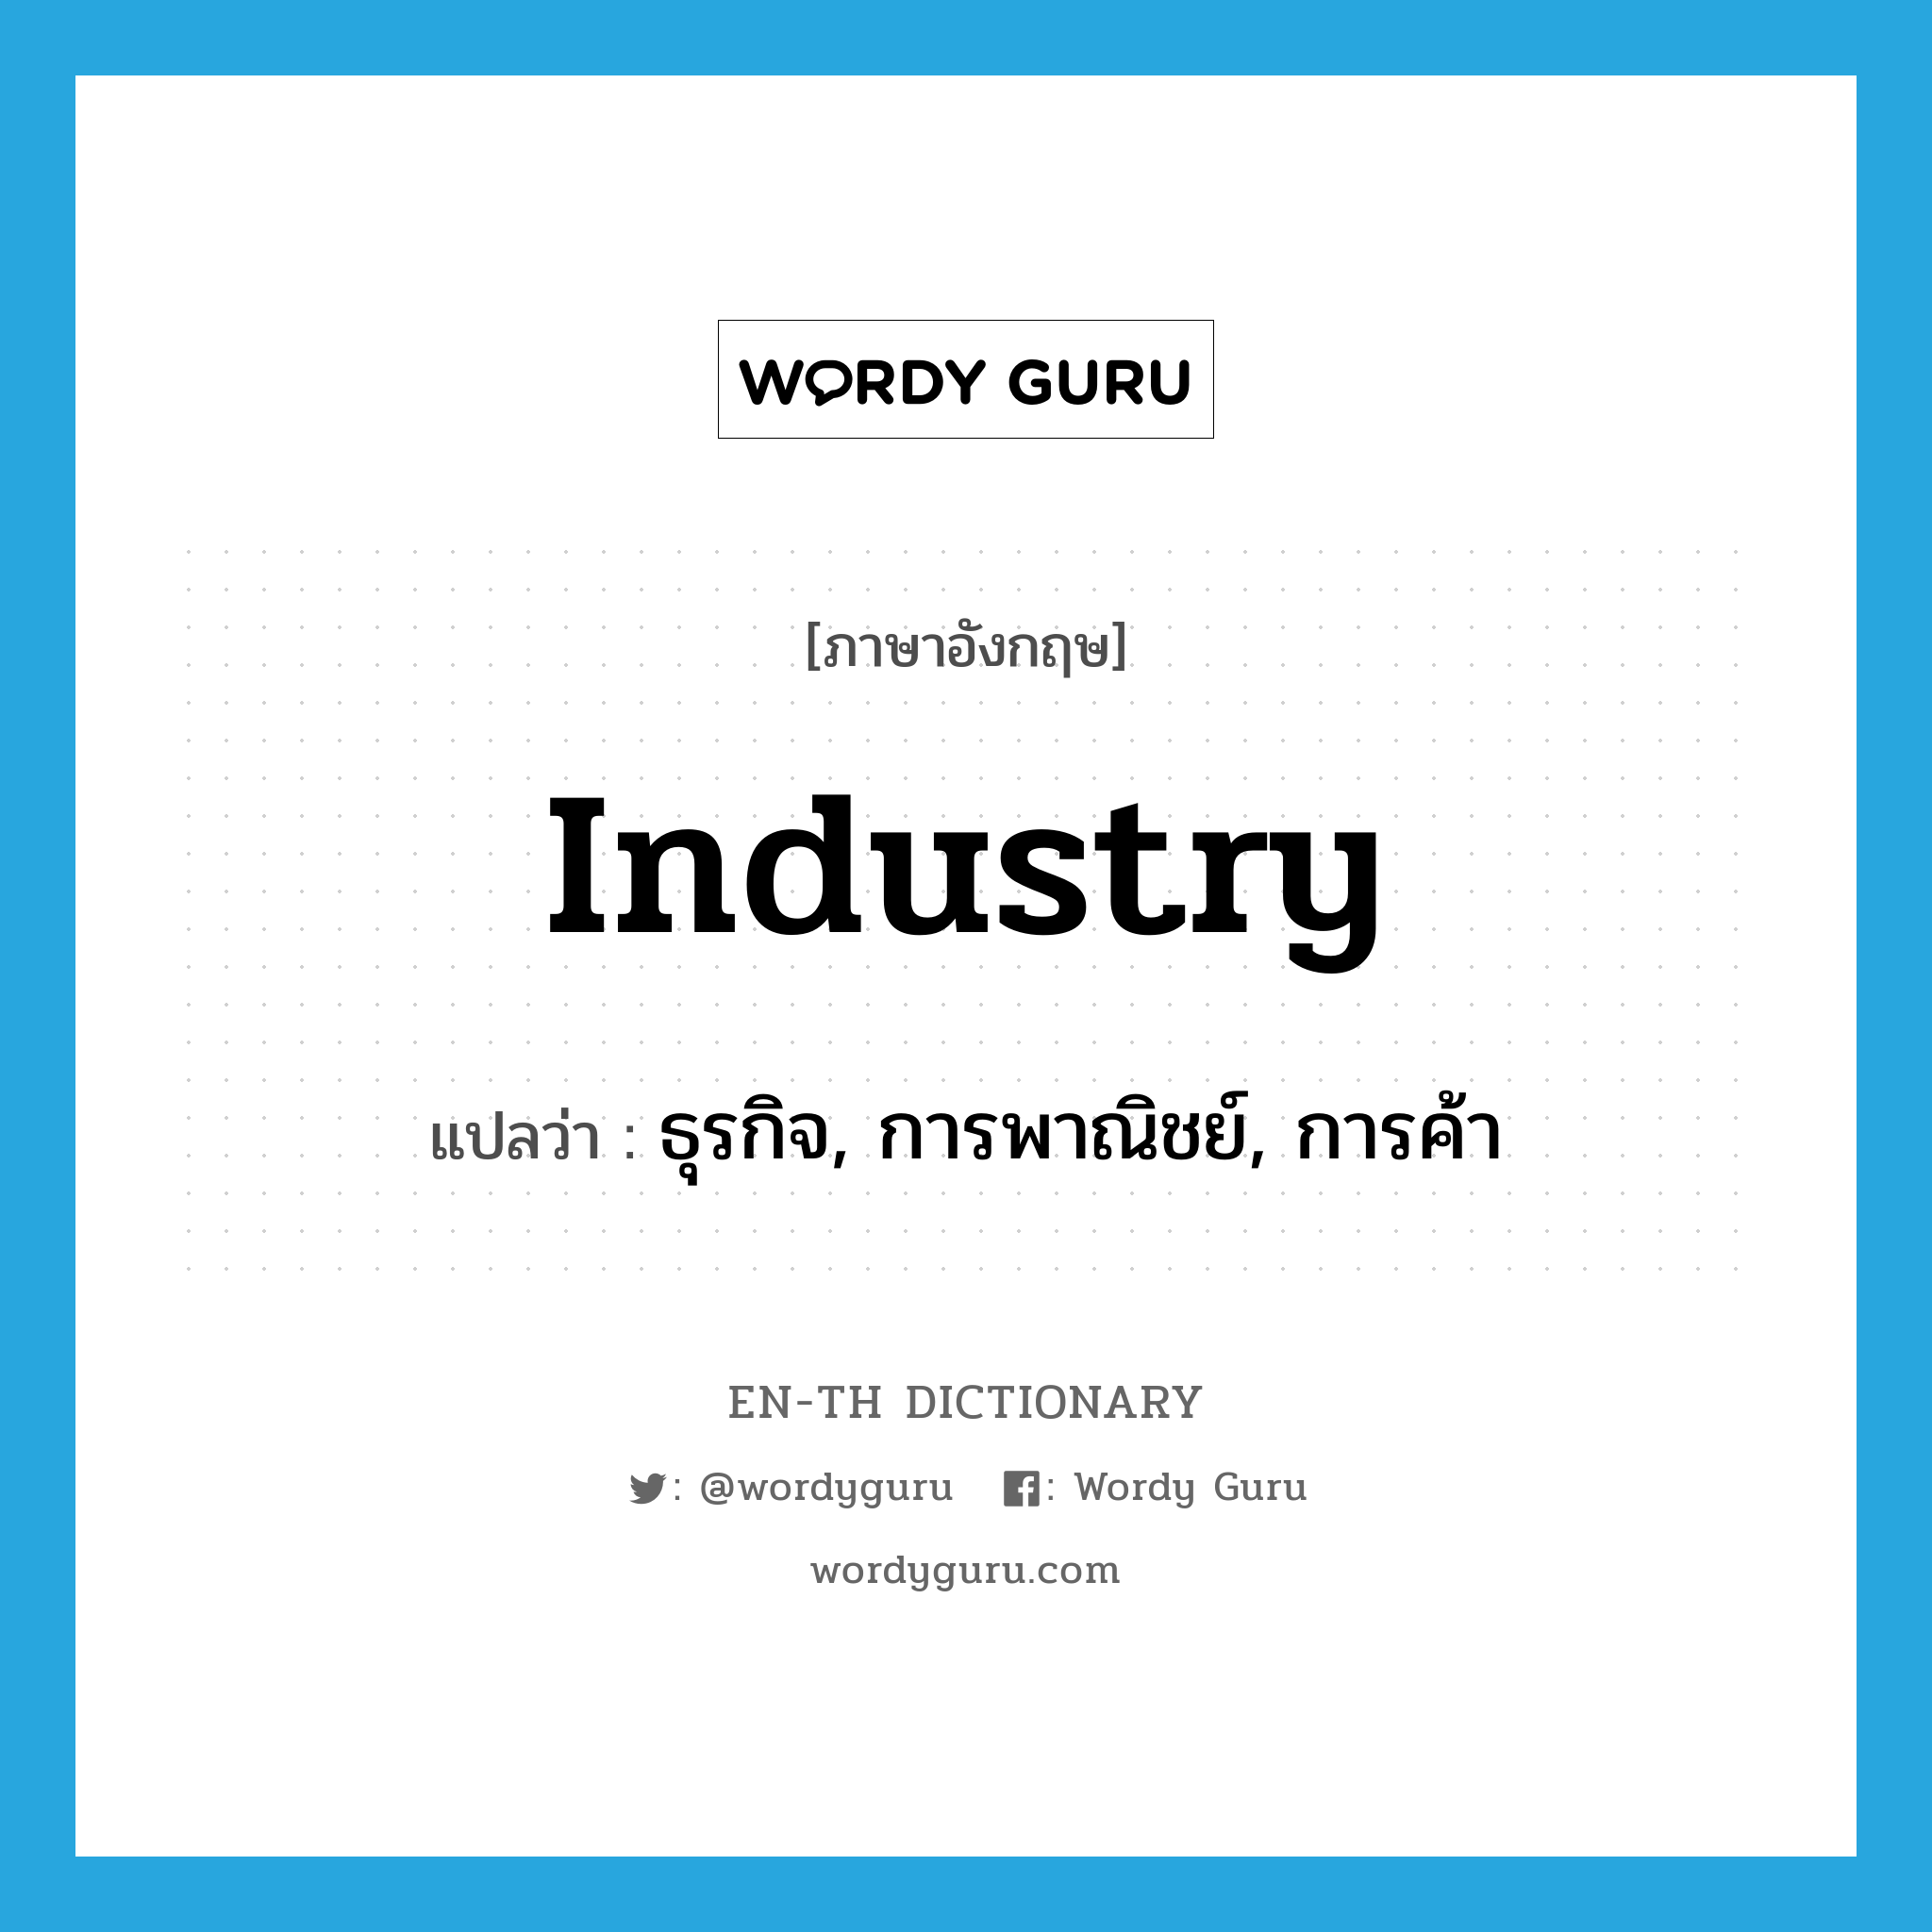 industry แปลว่า?, คำศัพท์ภาษาอังกฤษ industry แปลว่า ธุรกิจ, การพาณิชย์, การค้า ประเภท N หมวด N